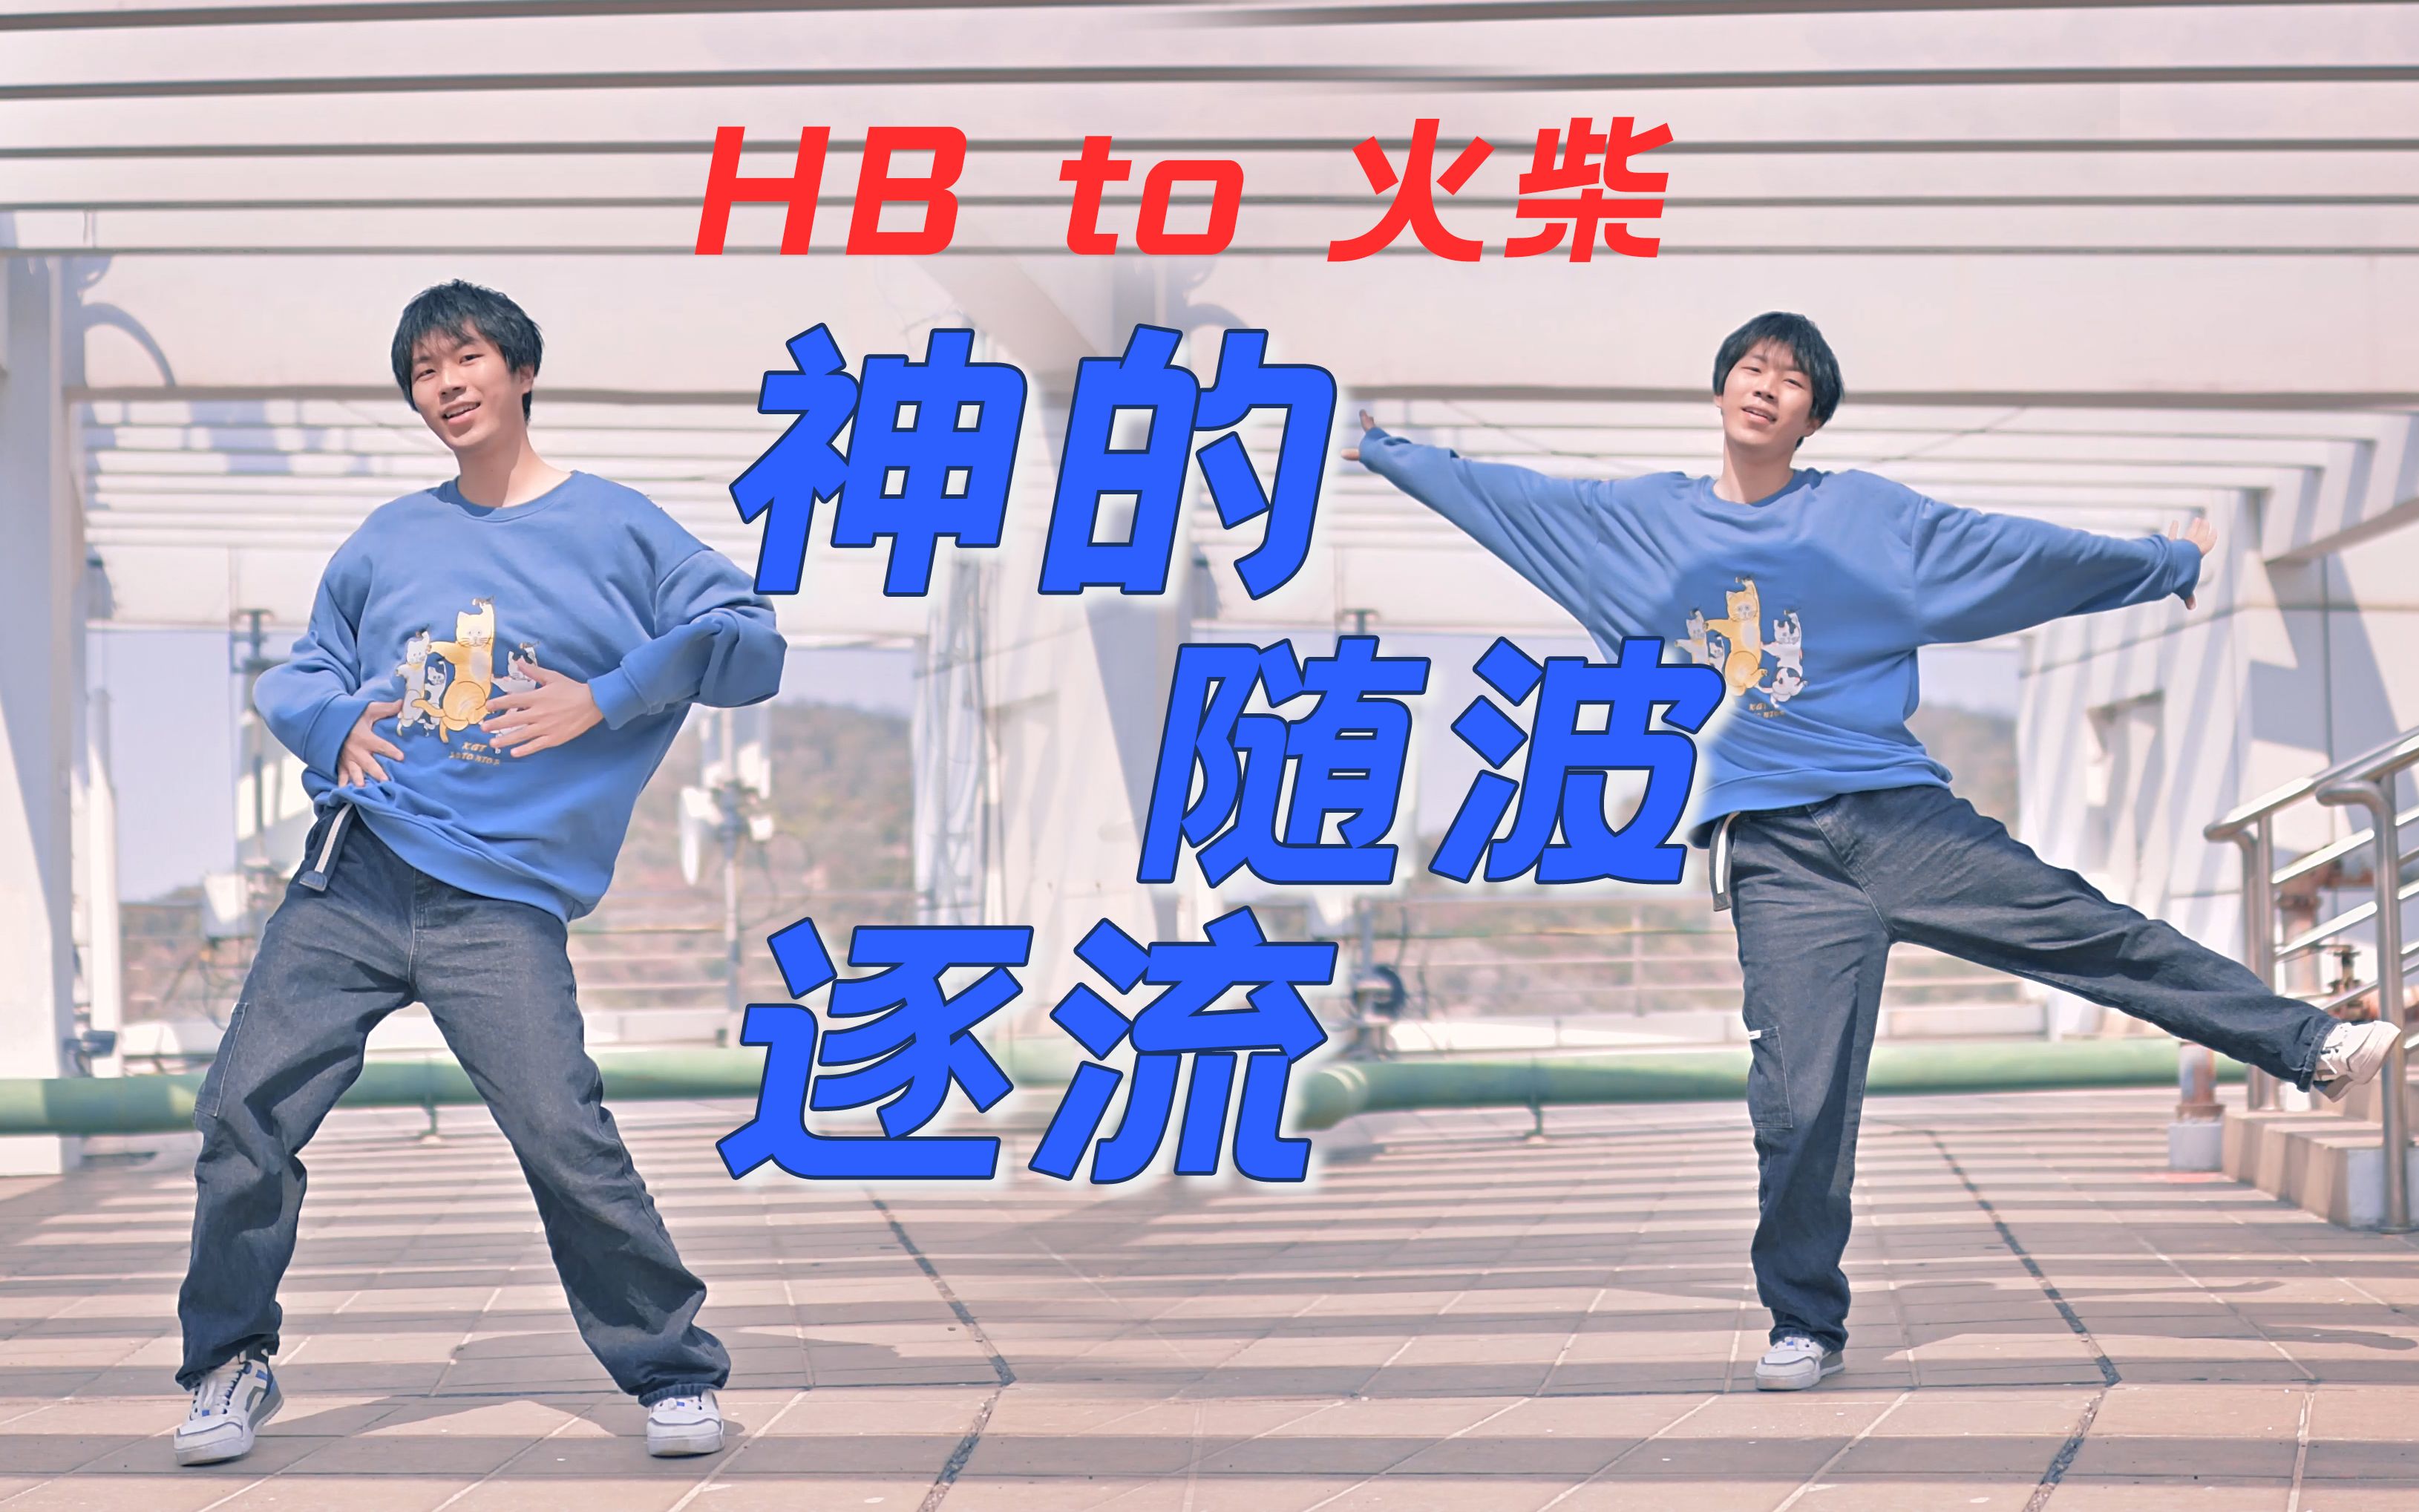 【HB2火柴】▸神的随波逐流 ◂ 【时空】